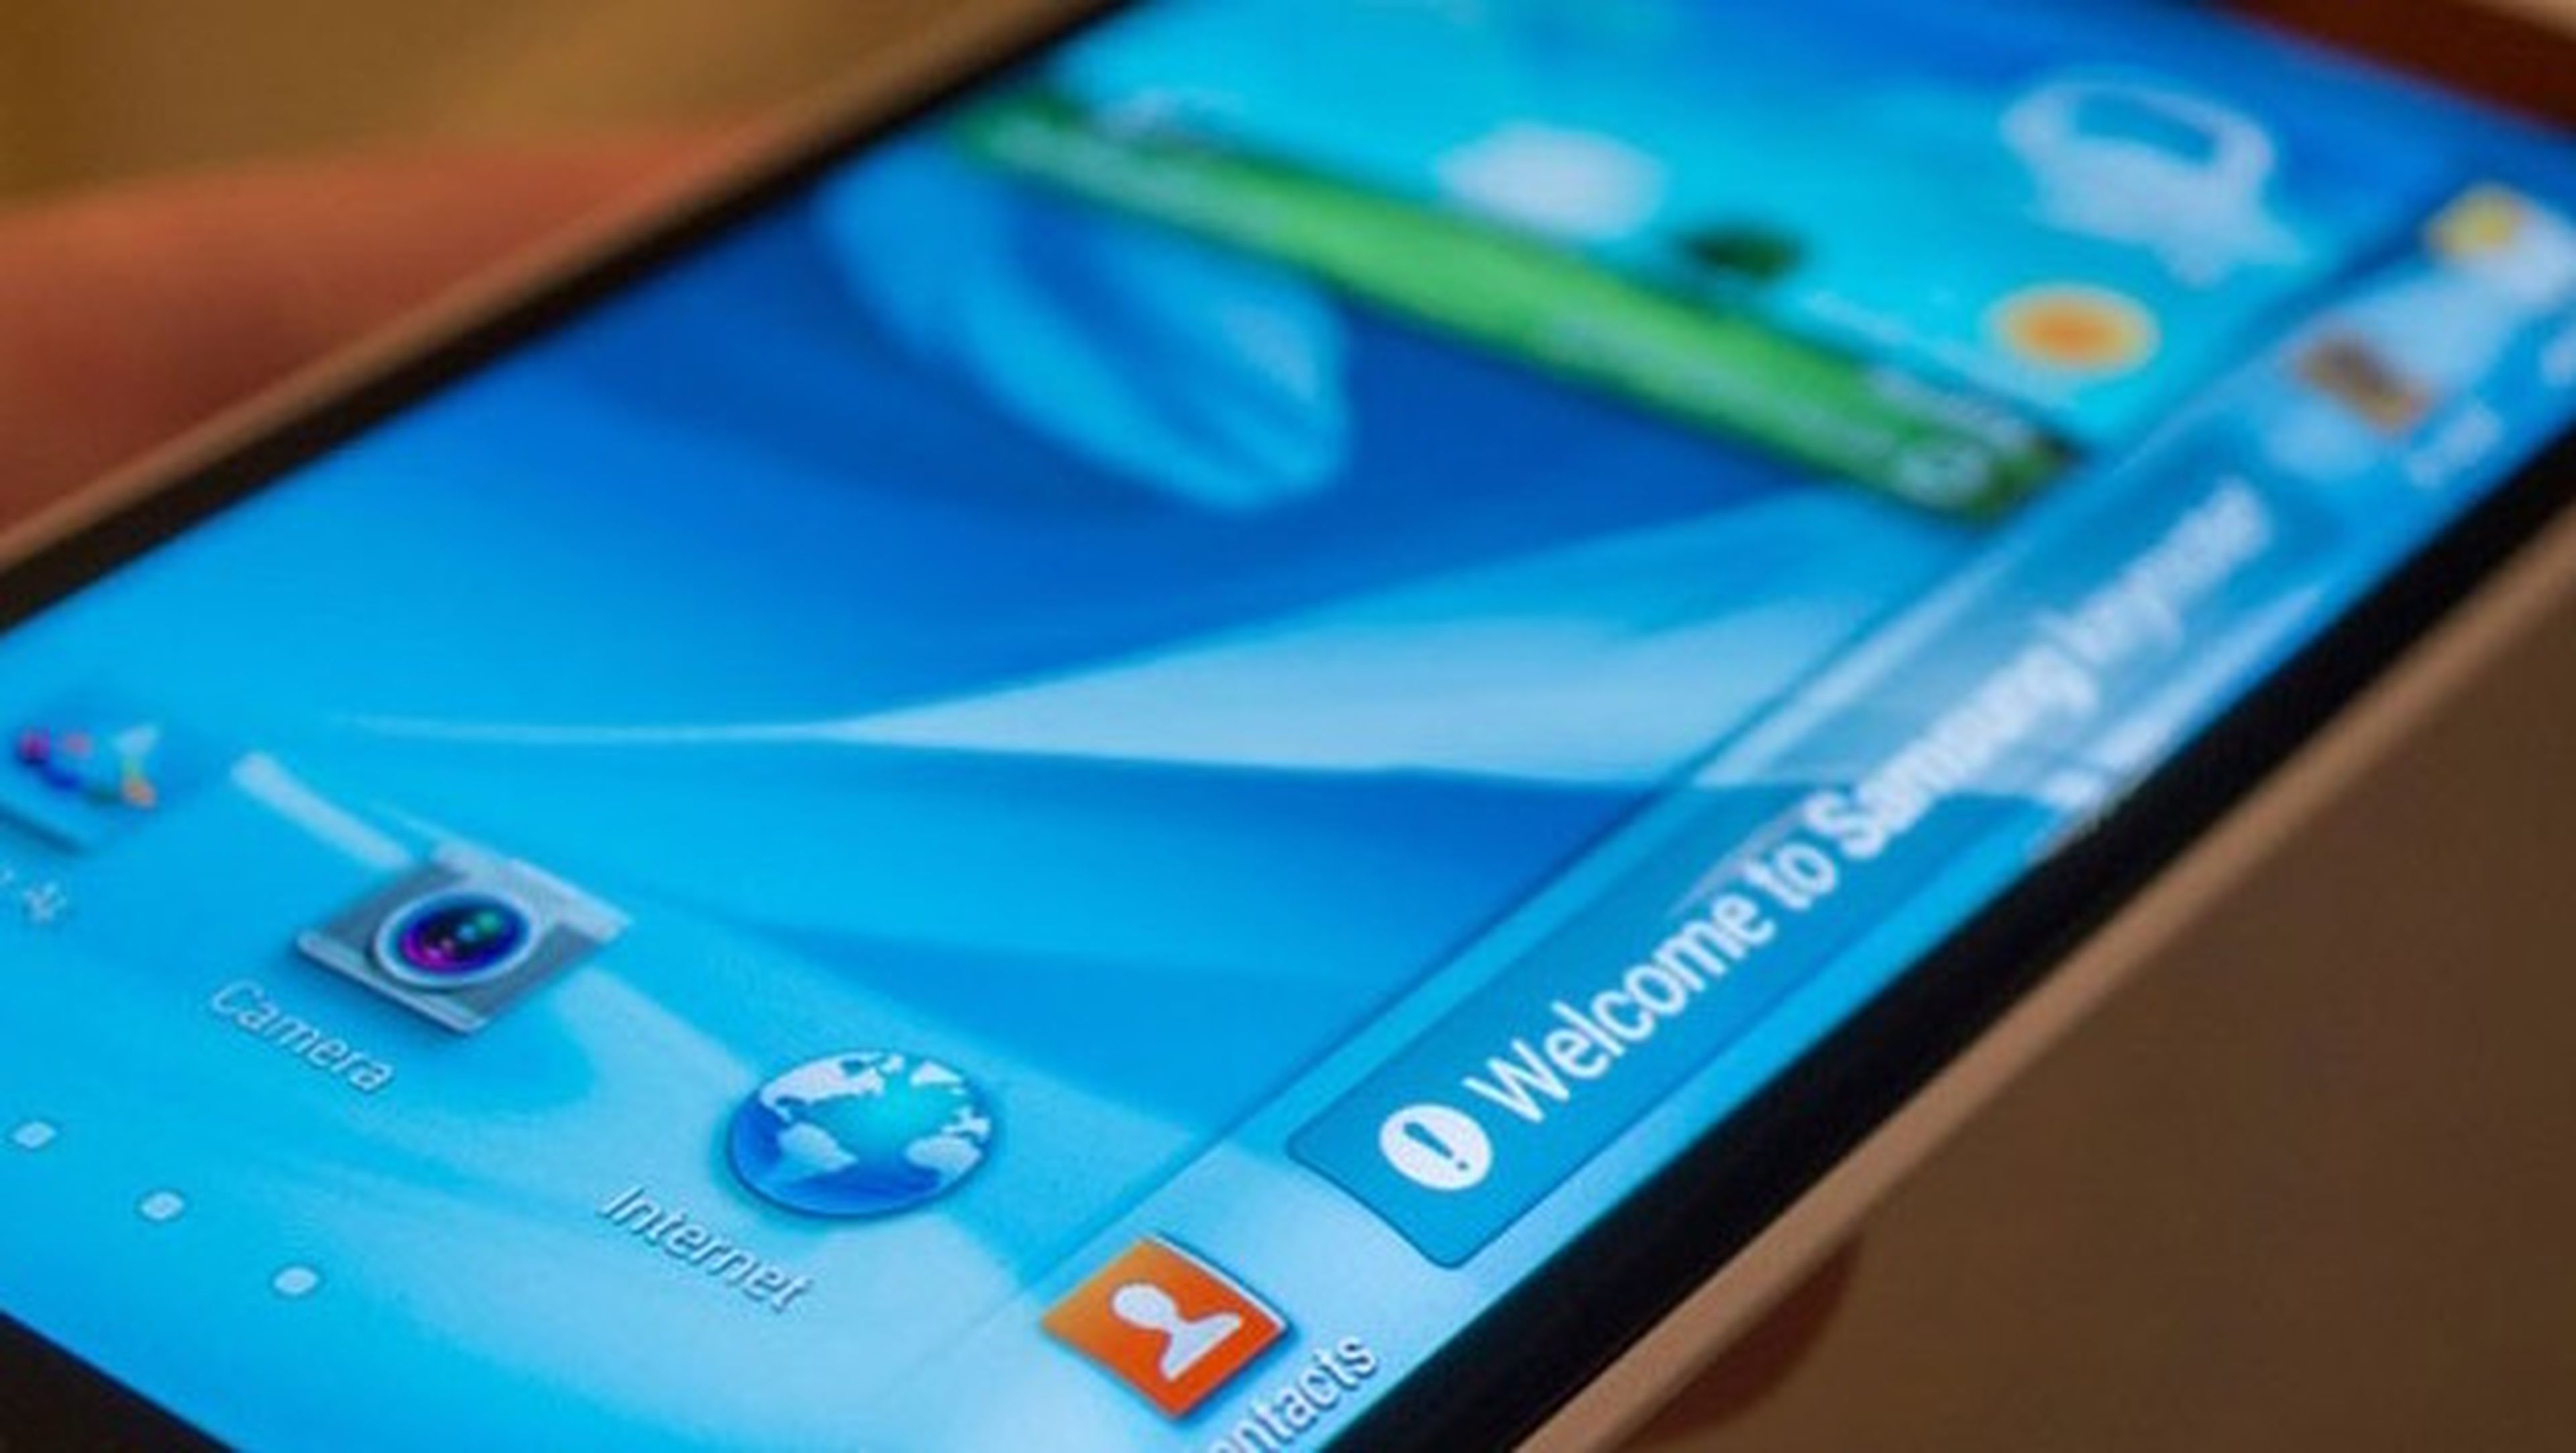 Patente revela que Samsung apuesta por el smartphone flexible